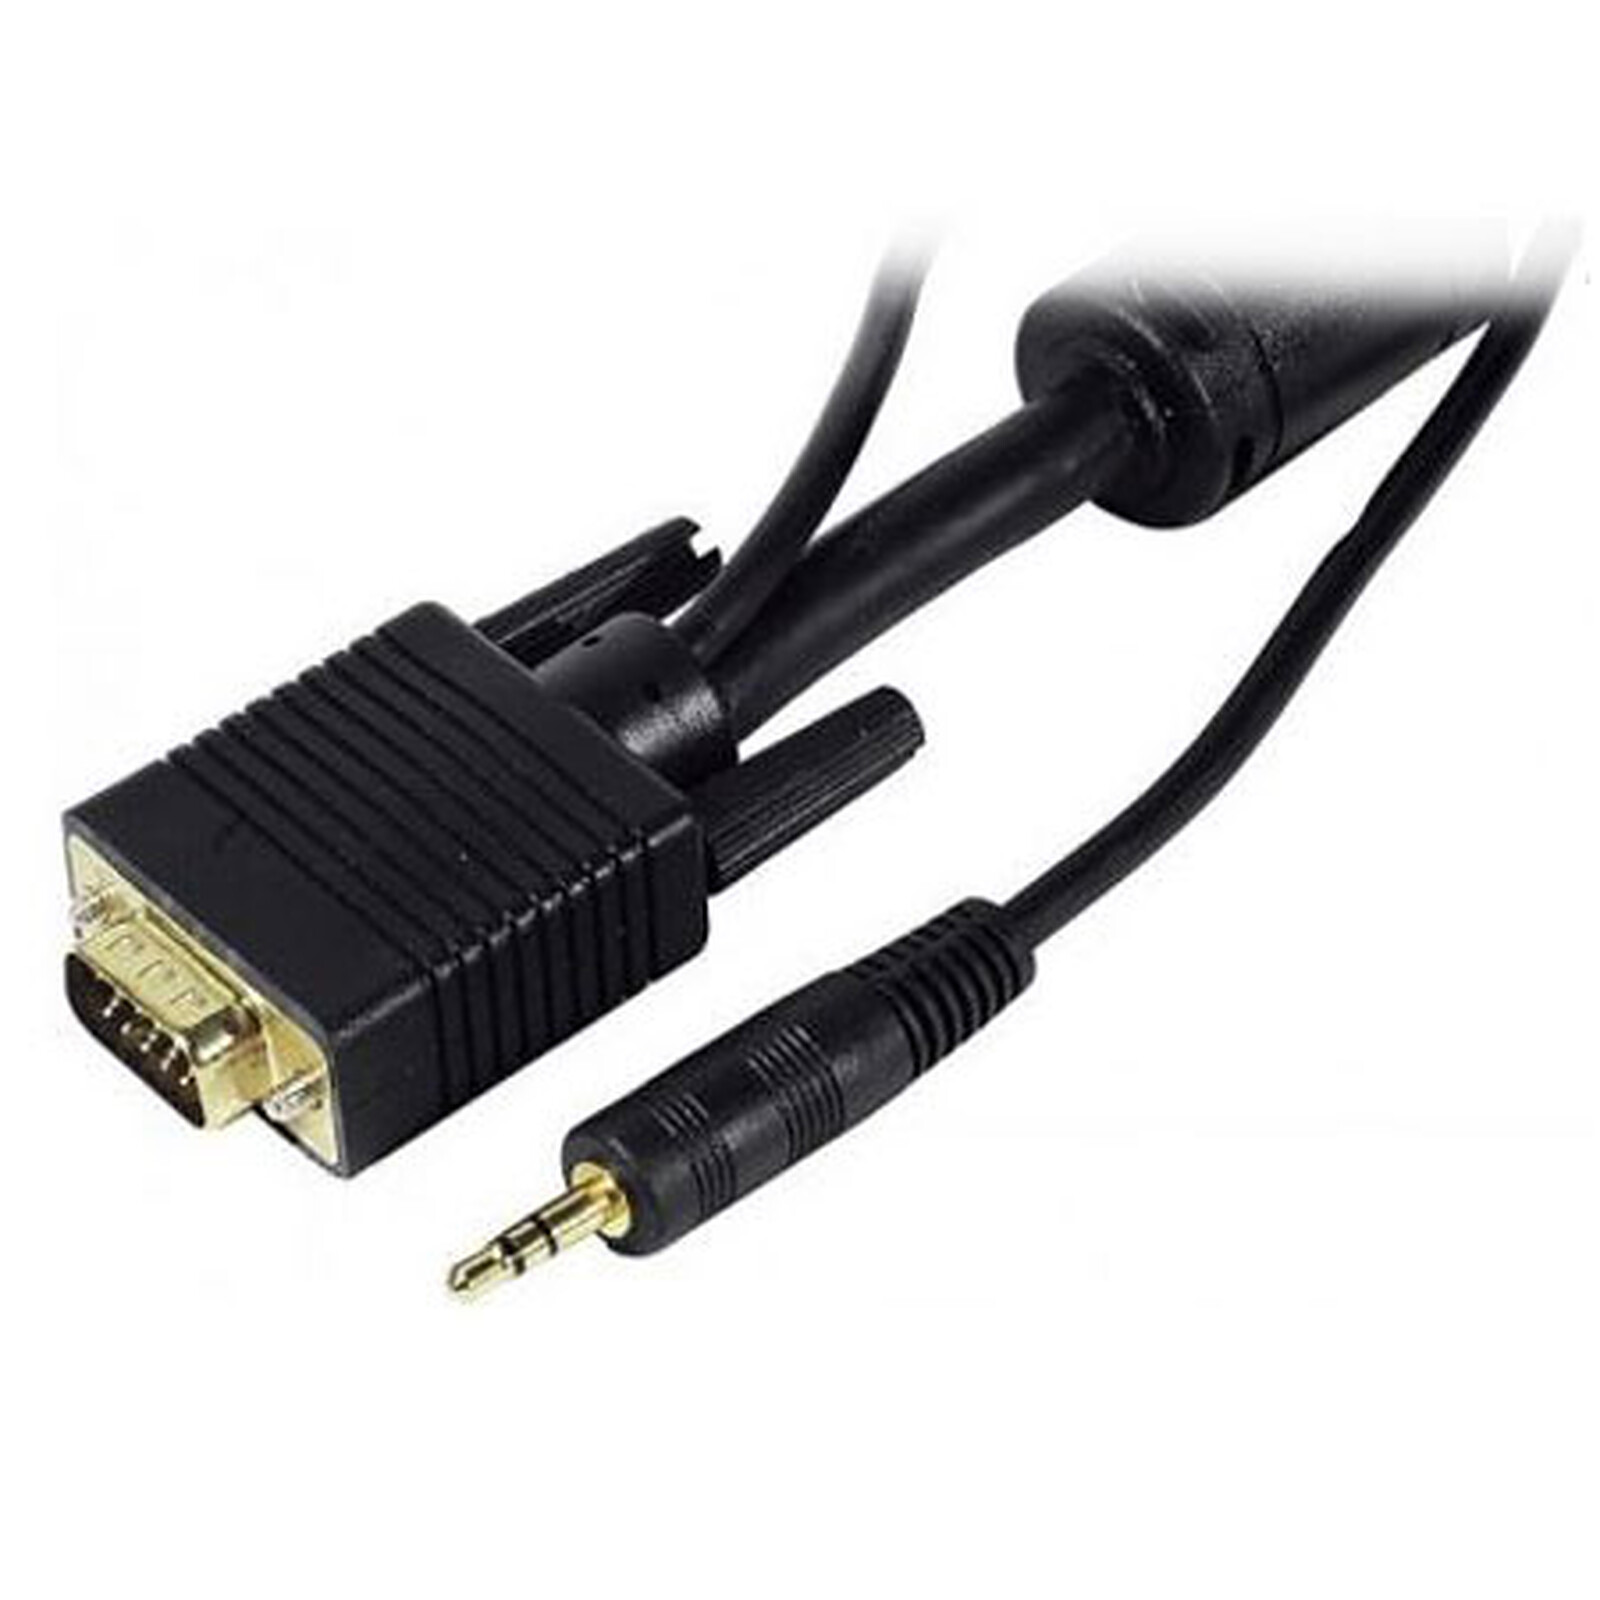 Cable VGA + Jack macho / macho (5 VGA Genérica LDLC